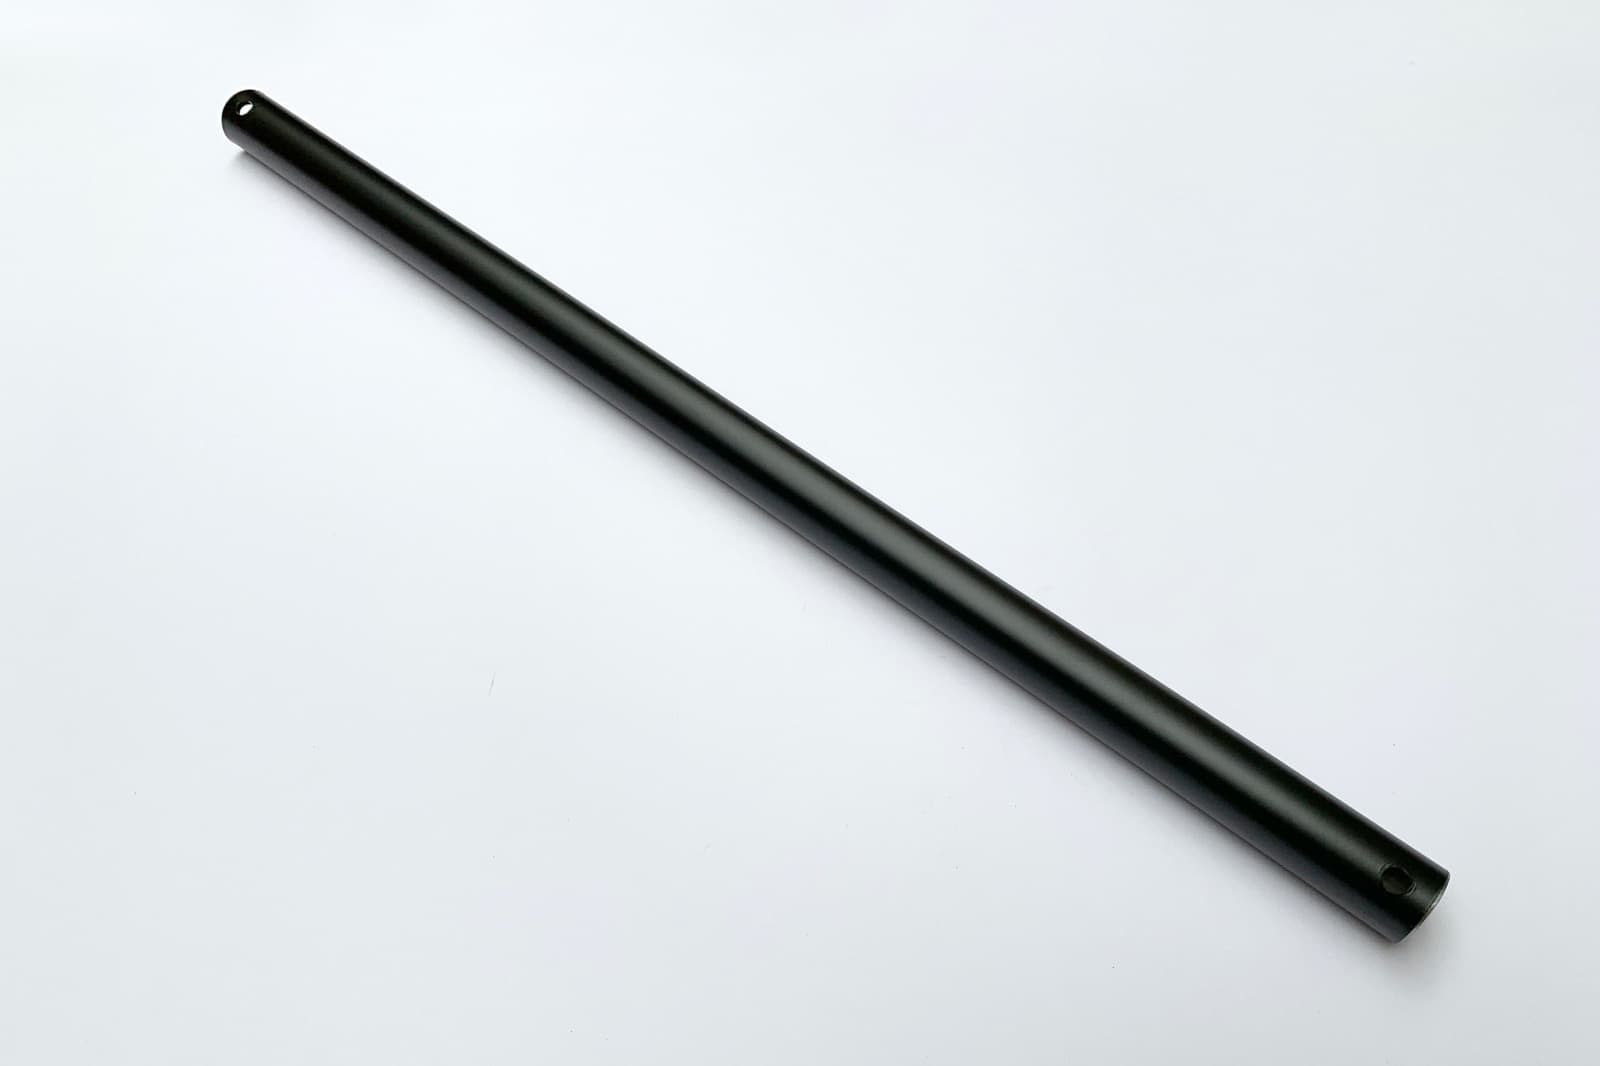 アイアンハンガーパイプ 吊りパイプ H500用 ブラック PS-HB008-31-G141 吊り用のパイプです